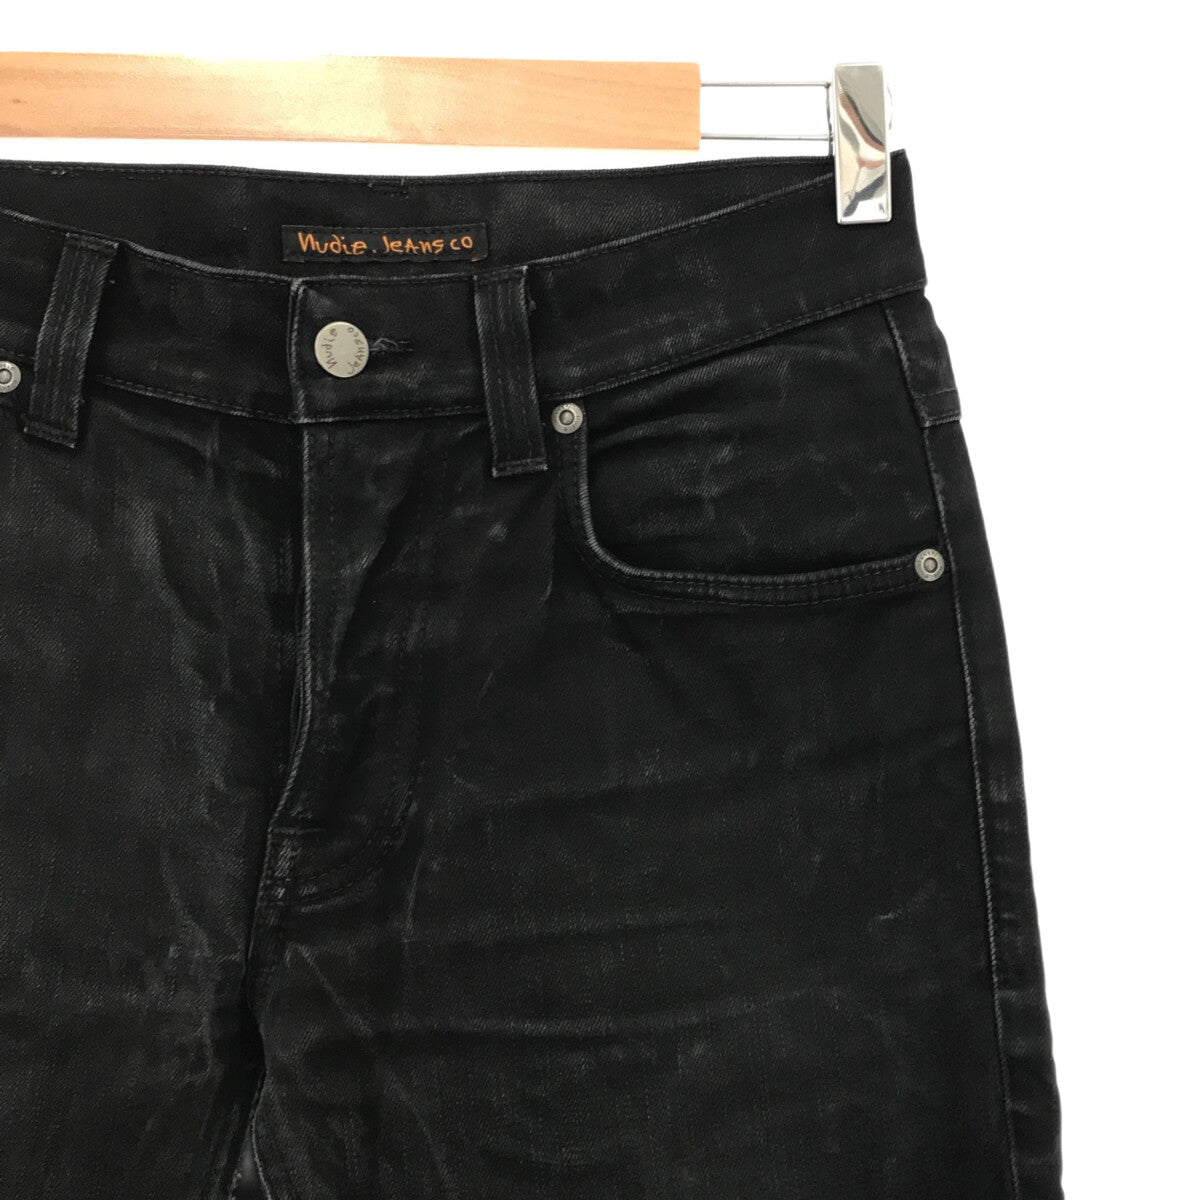 ★新品★Nudie Jeans Co(ヌーディージーンズ) メンズ デニムパンツサイズW30L32